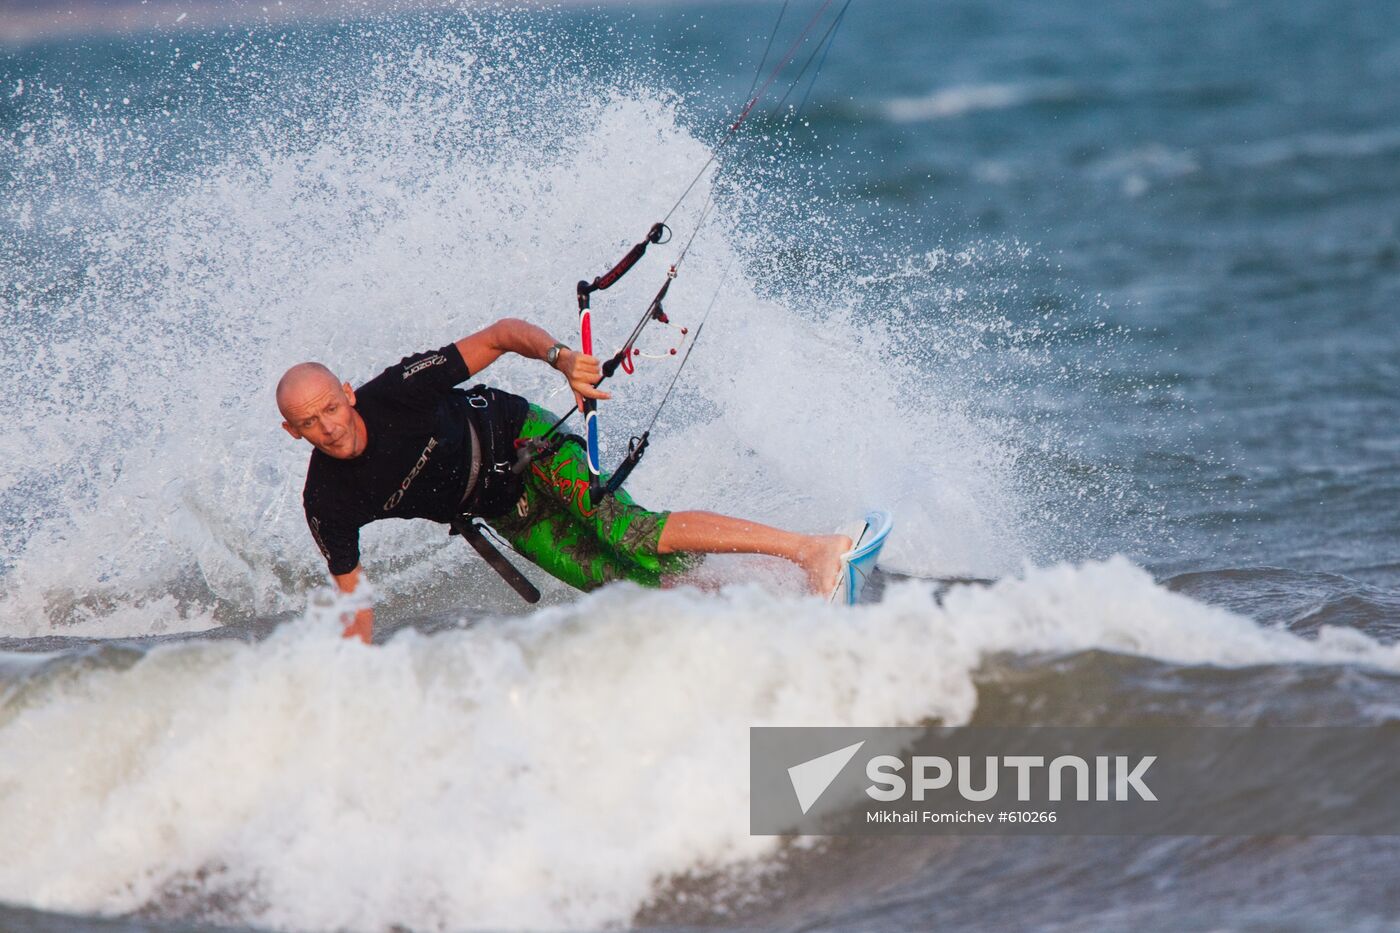 Sky surfer lands on water